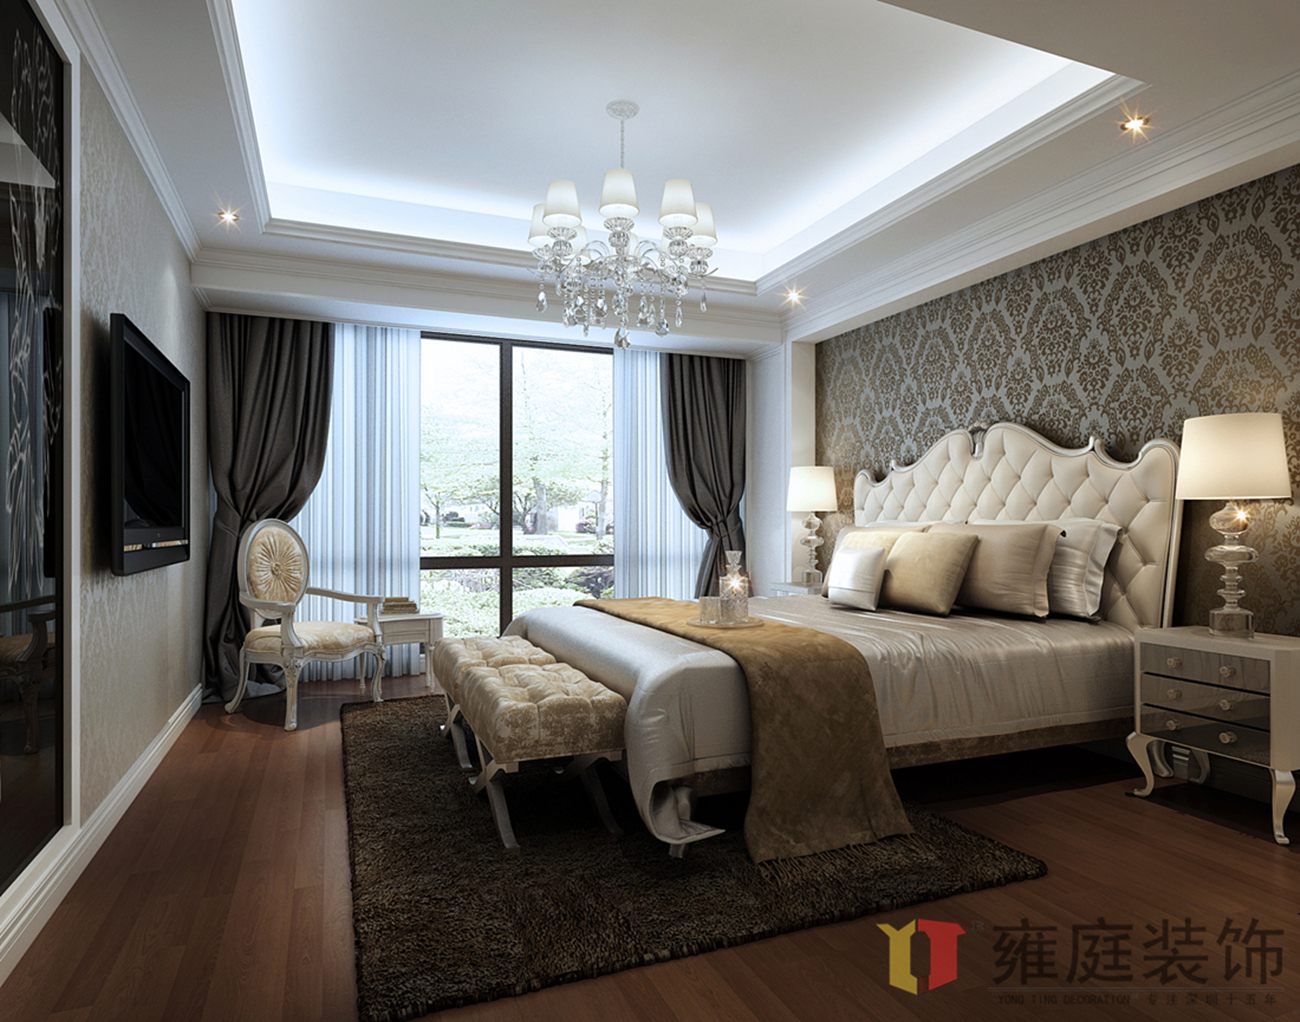 简约 欧式 小资 卧室图片来自深圳雍庭装饰在居家原创的分享